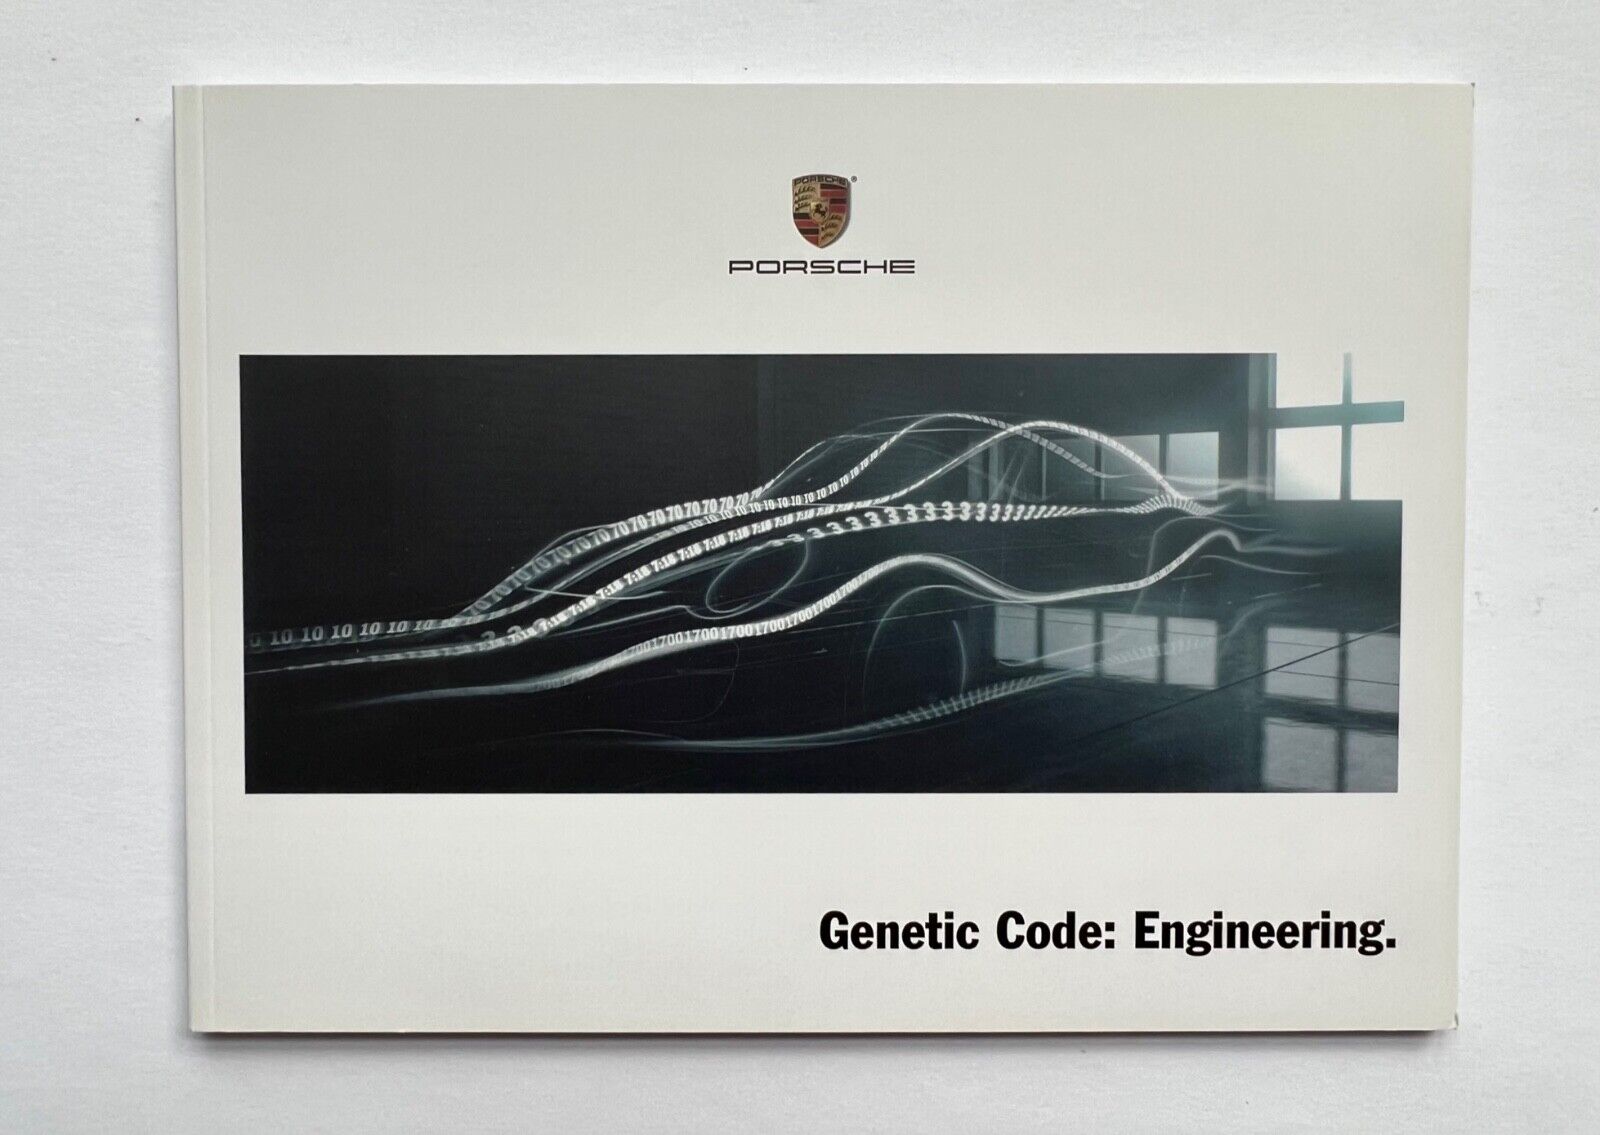 Porsche Genetic Code: Engineering Brochure